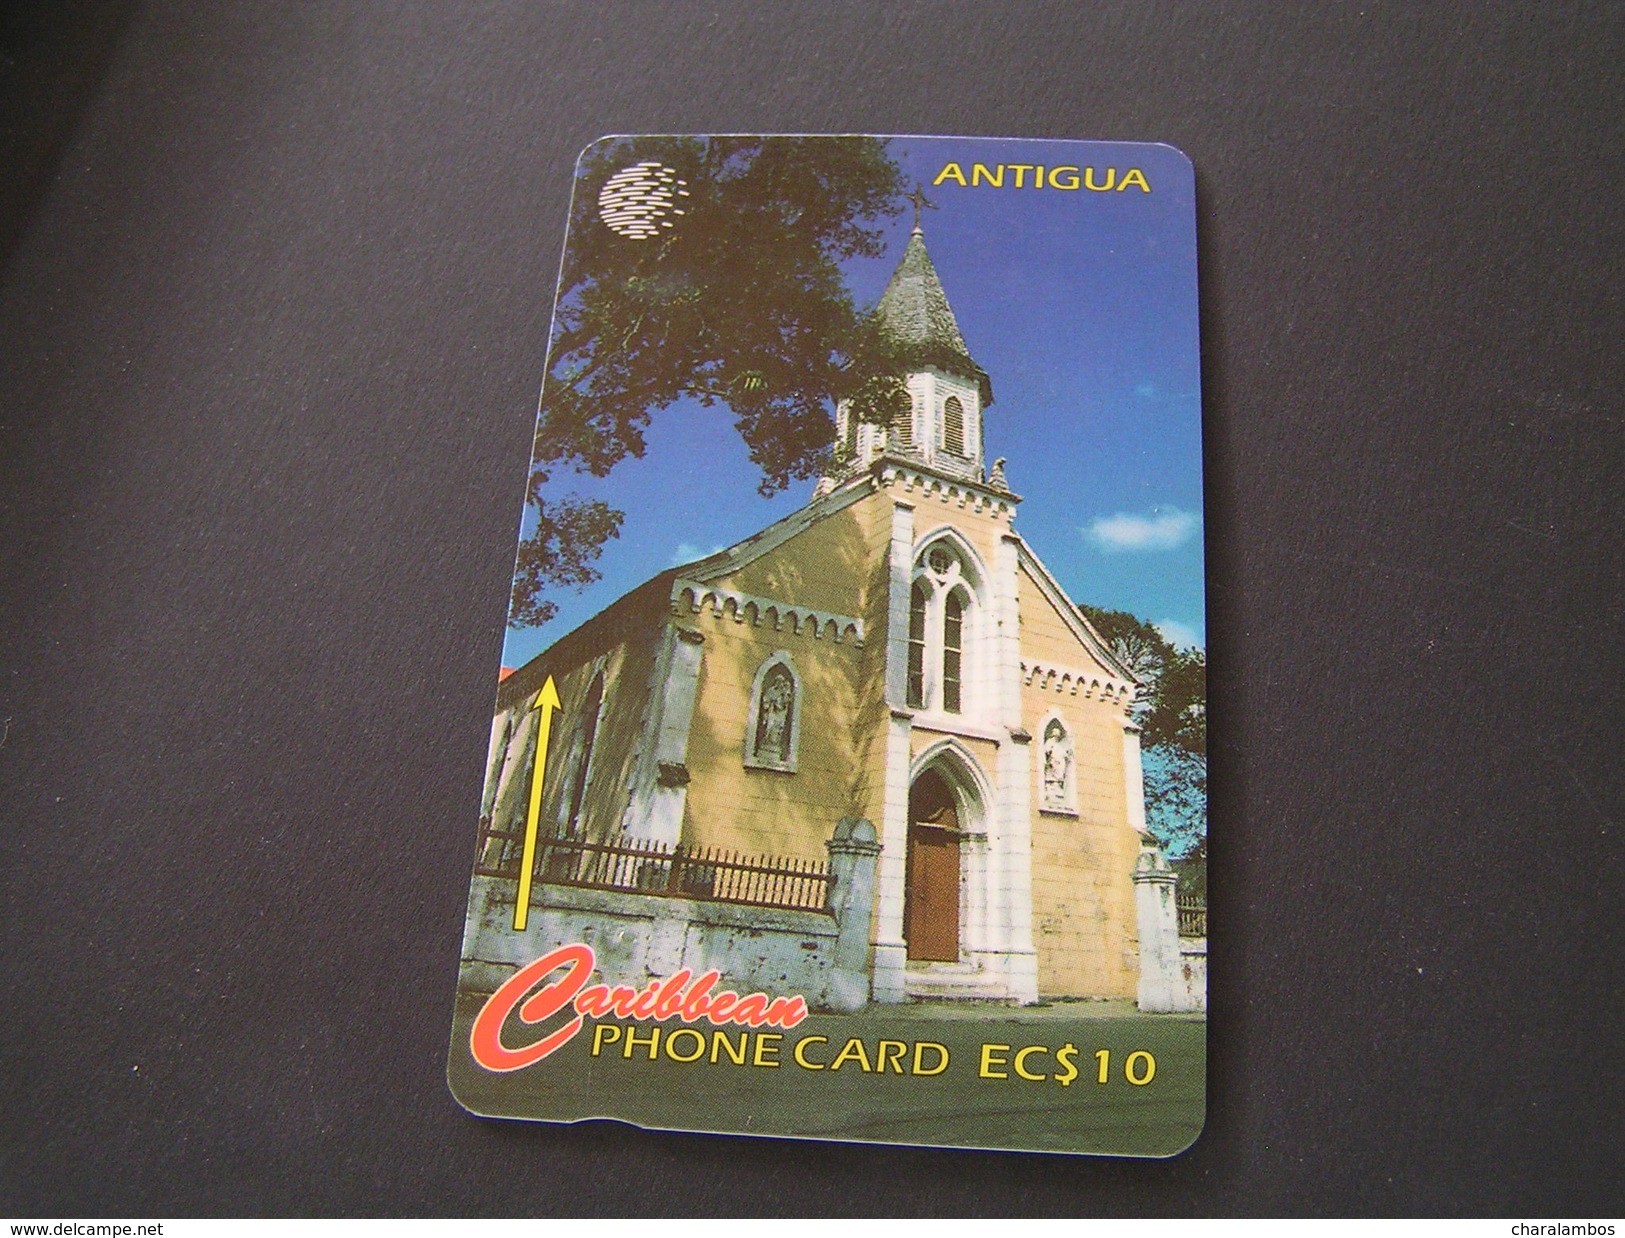 Antigua And Barbuda Phonecards. - Antigua En Barbuda